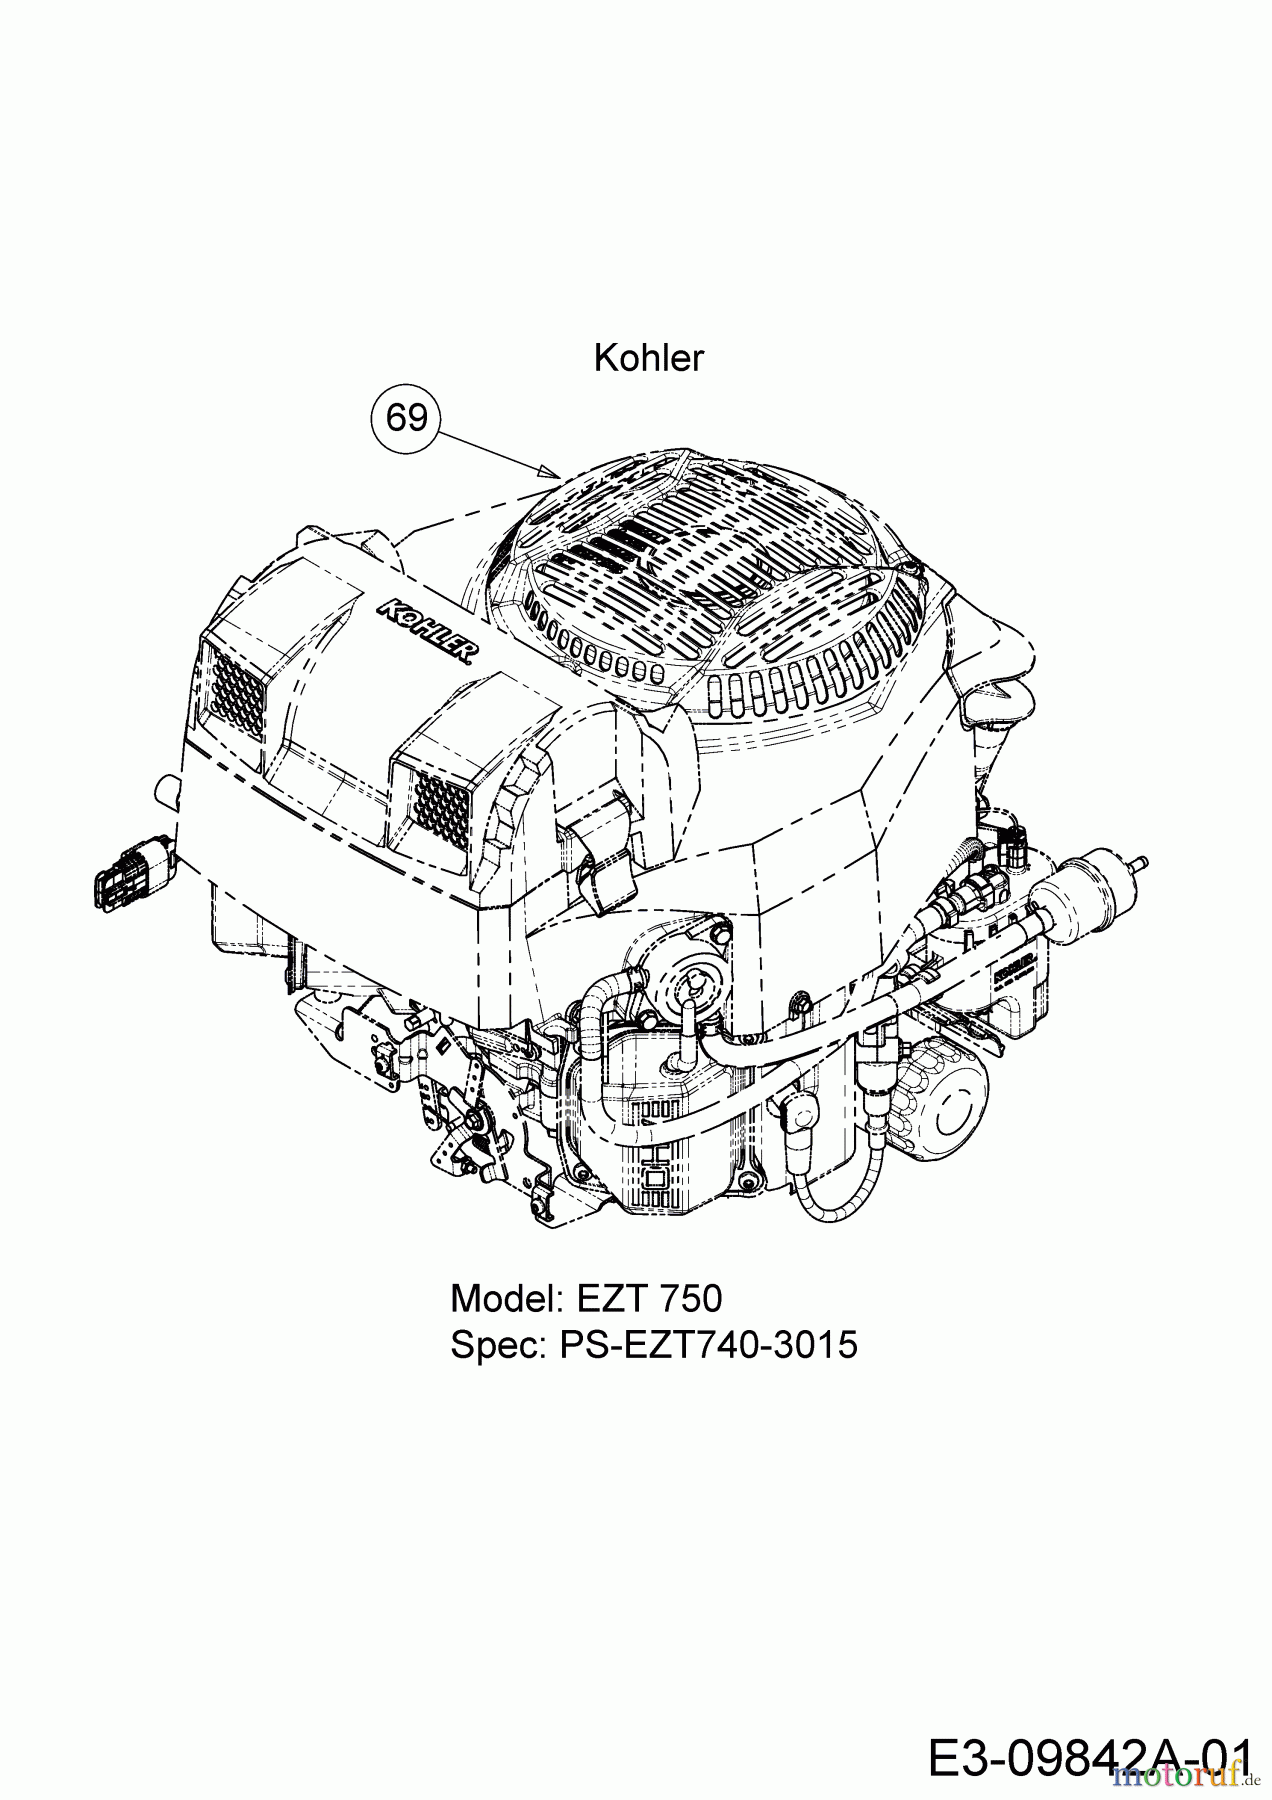  Cub Cadet Zero Turn ProZ 100-54 53AWEFJA330  (2016) Engine Kohler